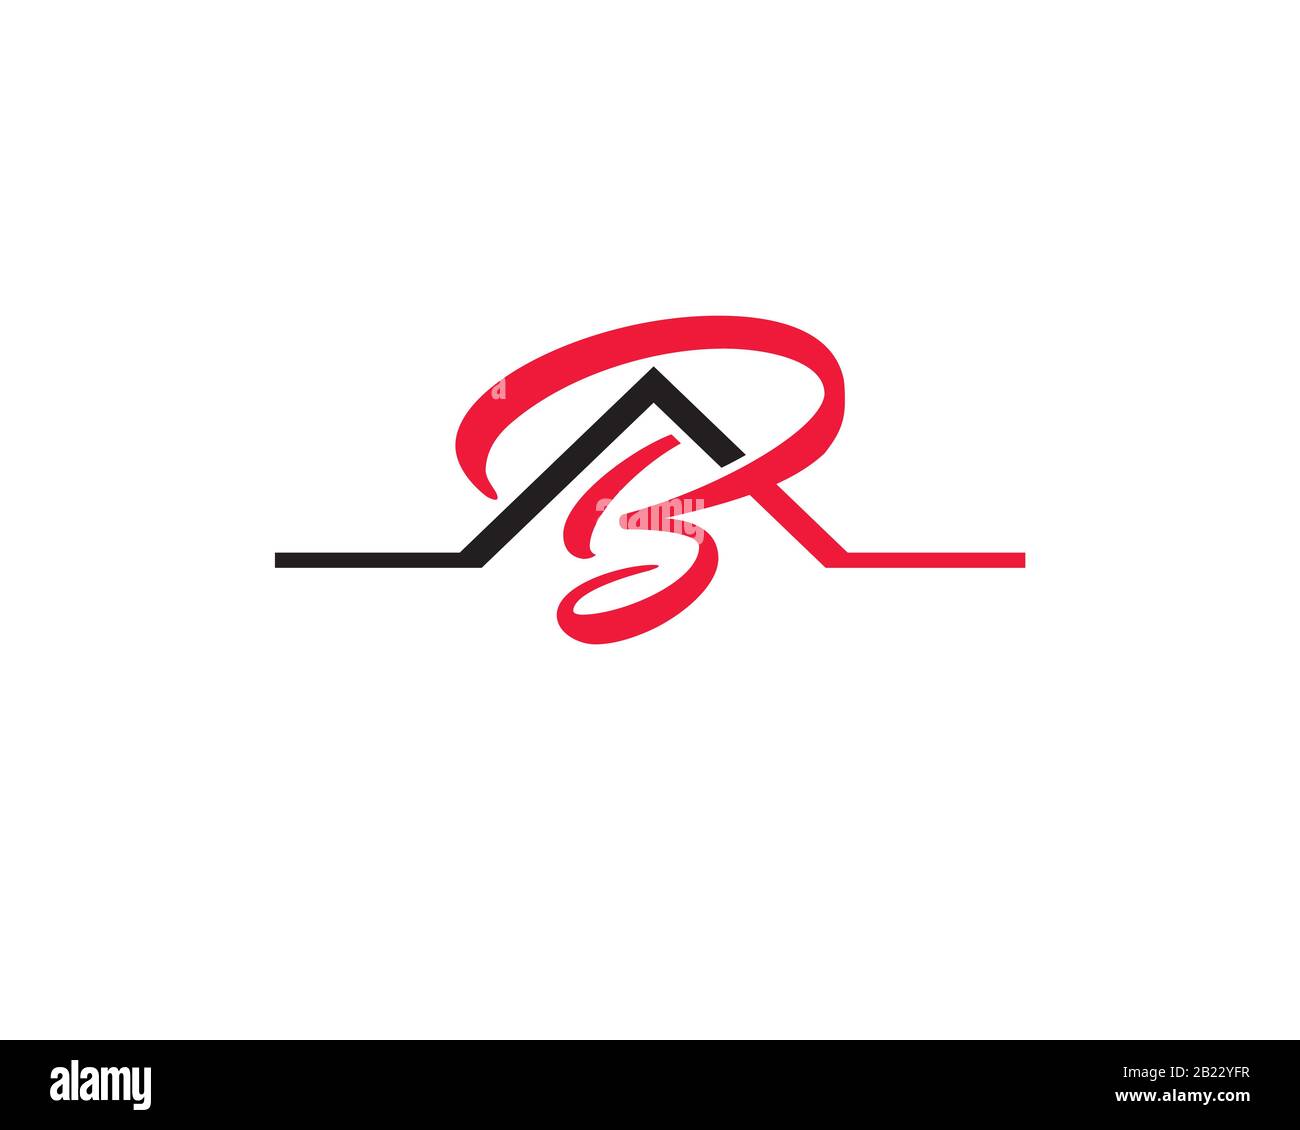 Monogramme anagram lettermark logo de la lettre A B comme maison agence immobilière de toiture Illustration de Vecteur